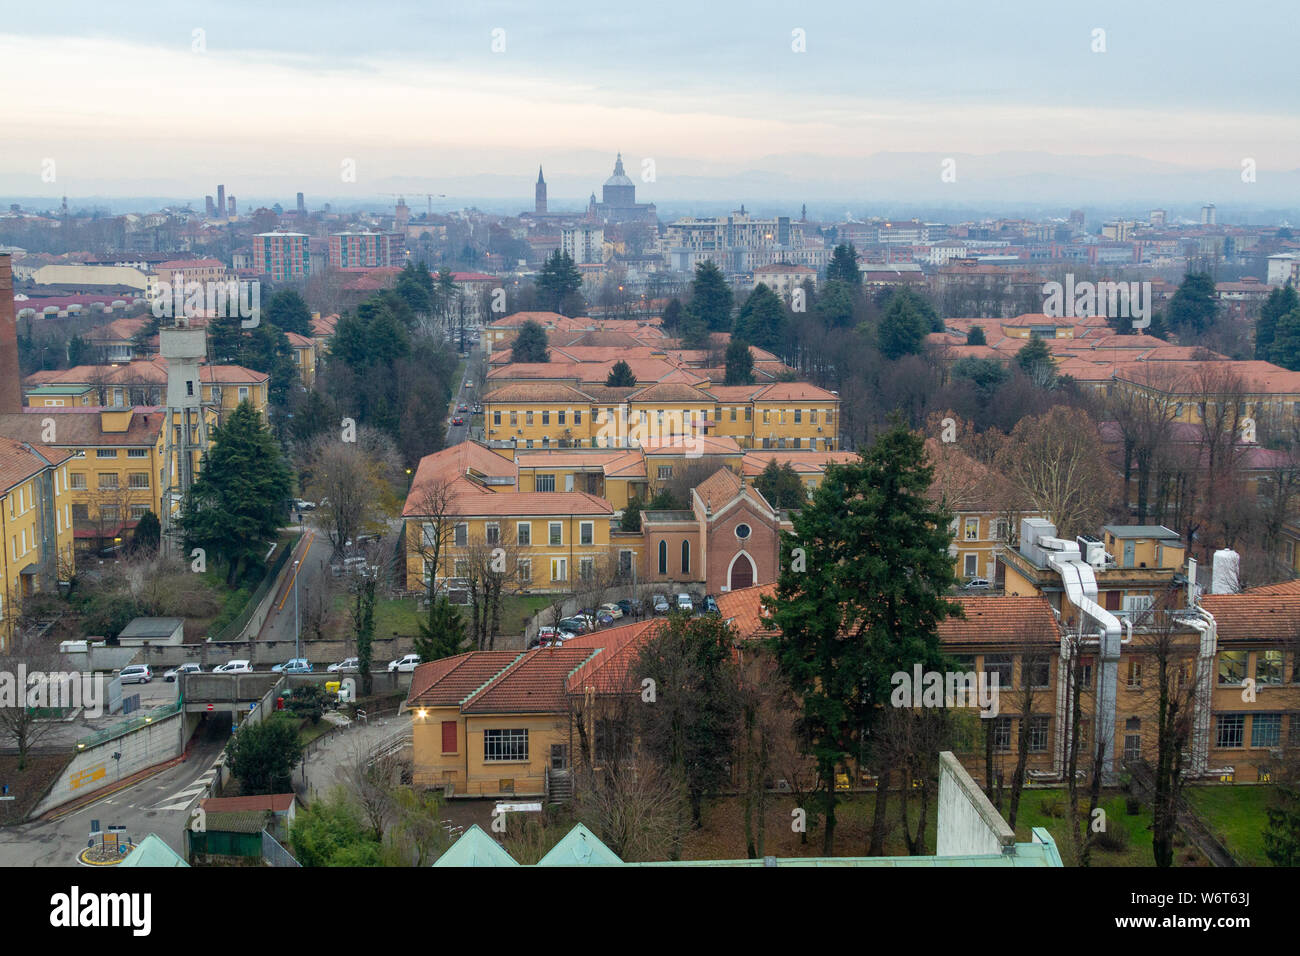 Una vista dell'ospedale di Ospedale San Matteo (San Matteo Hospital) di Pavia con il centro della città in background. Foto Stock